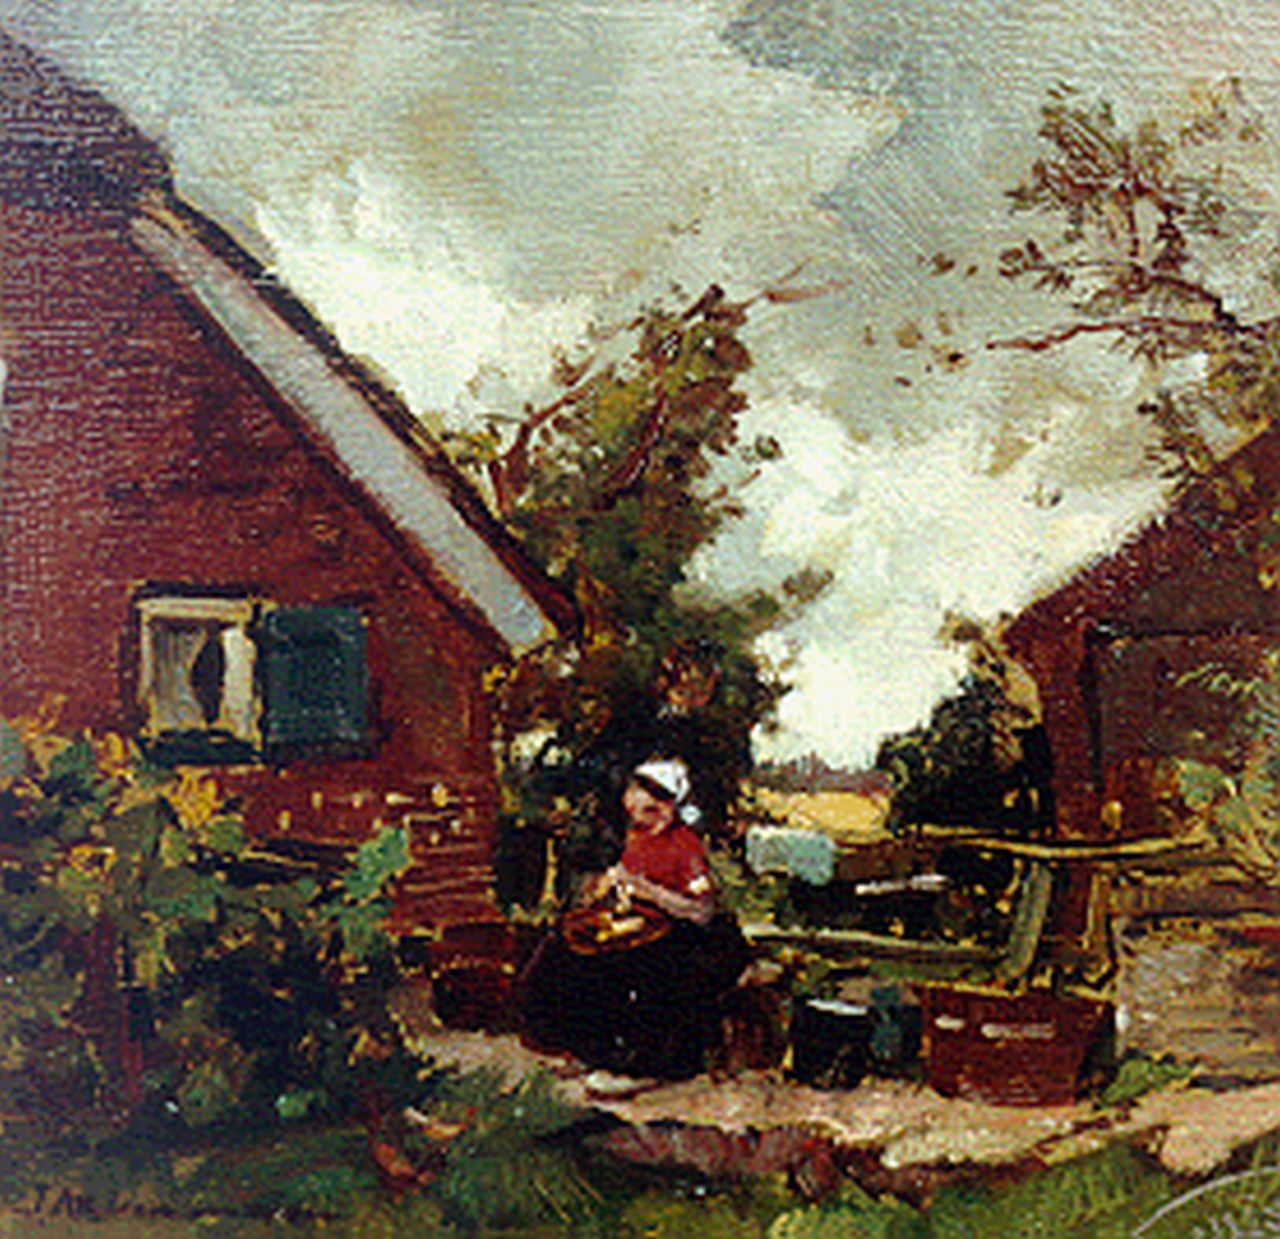 Akkeringa J.E.H.  | 'Johannes Evert' Hendrik Akkeringa, A farmyard with a woman peeling potatoes, oil on panel 15.7 x 16.2 cm, signed l.l.